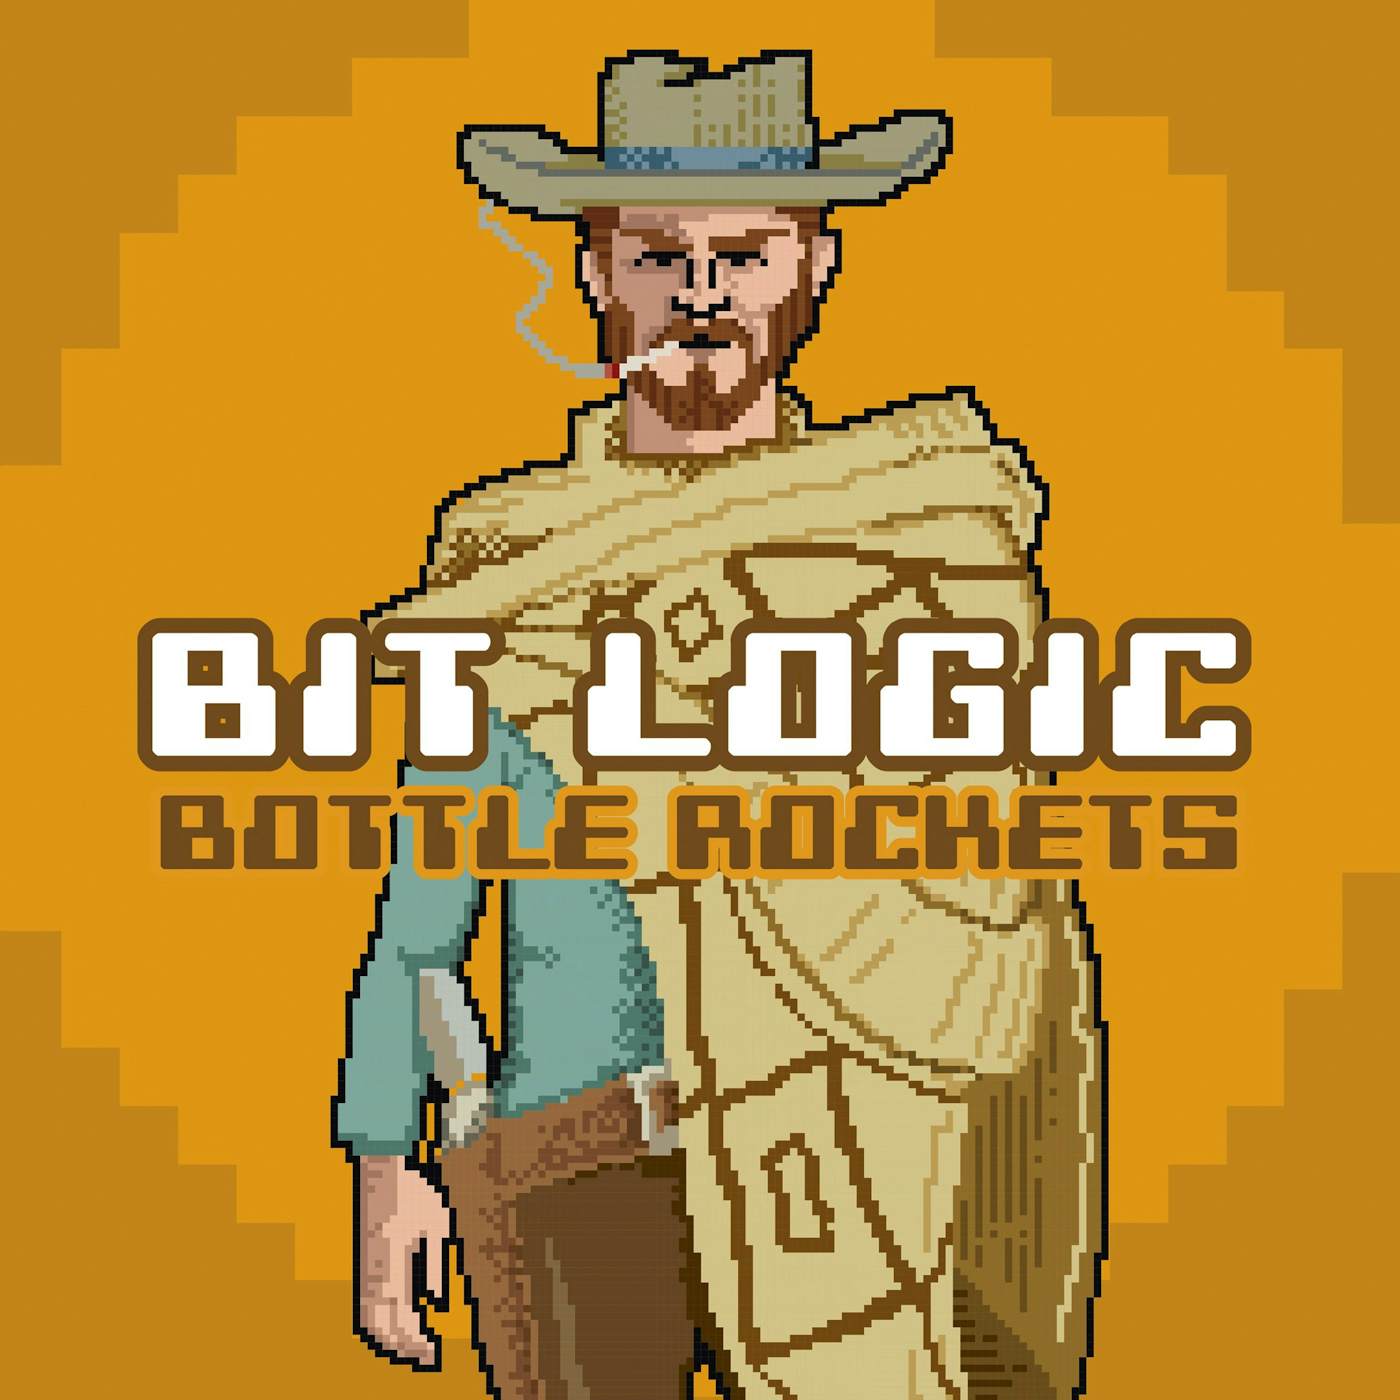 The Bottle Rockets BIT LOGIC CD